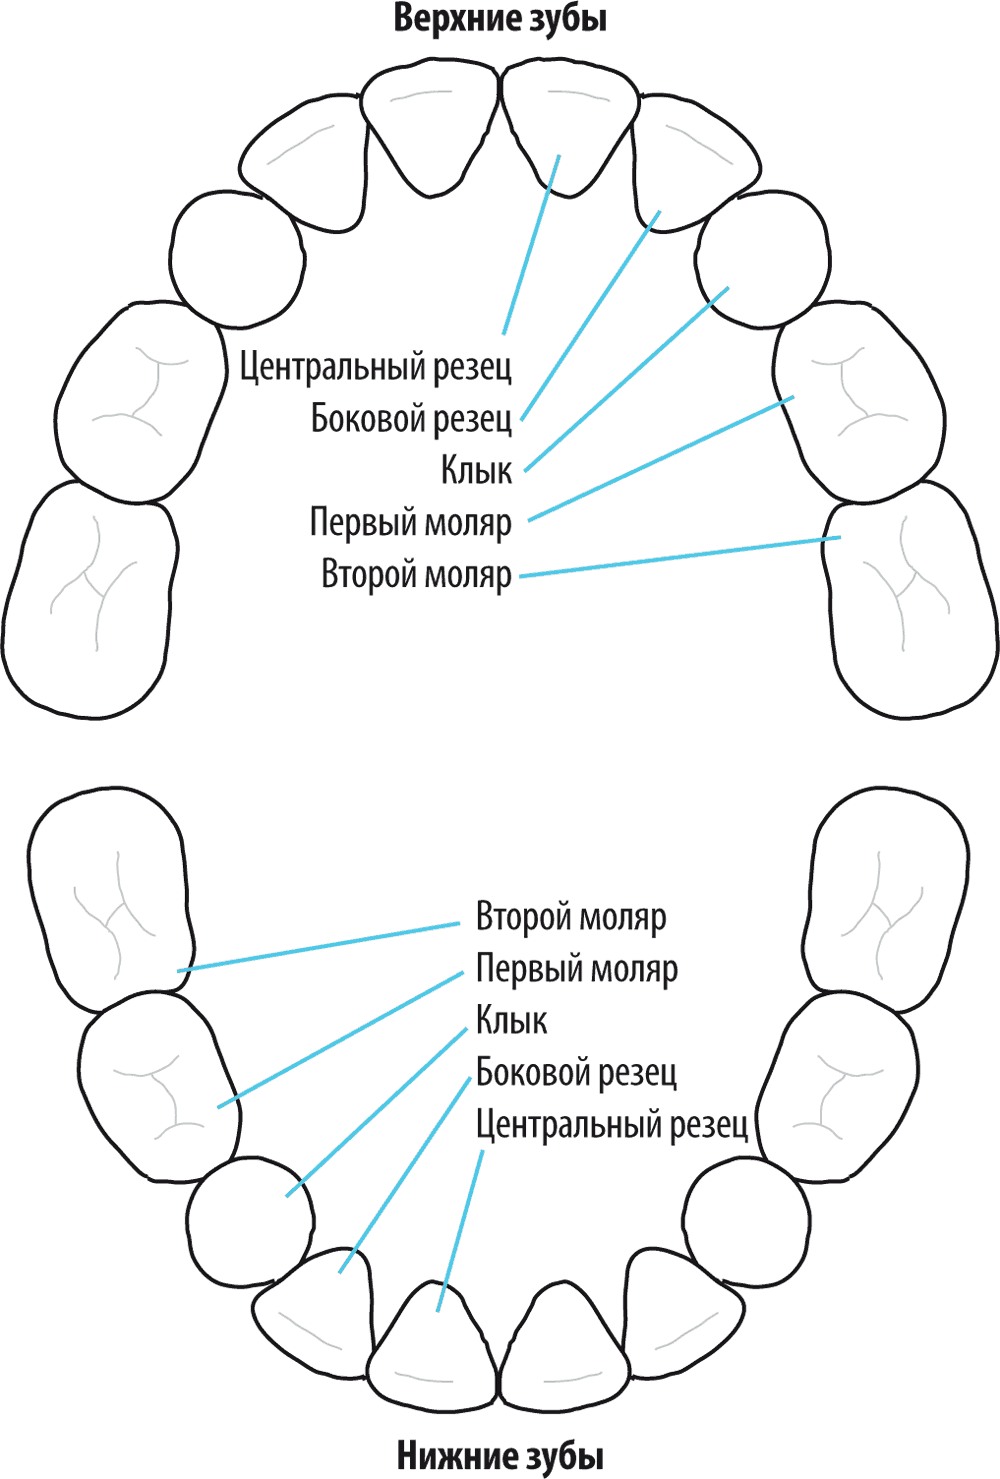 Схема прорезывания зубов